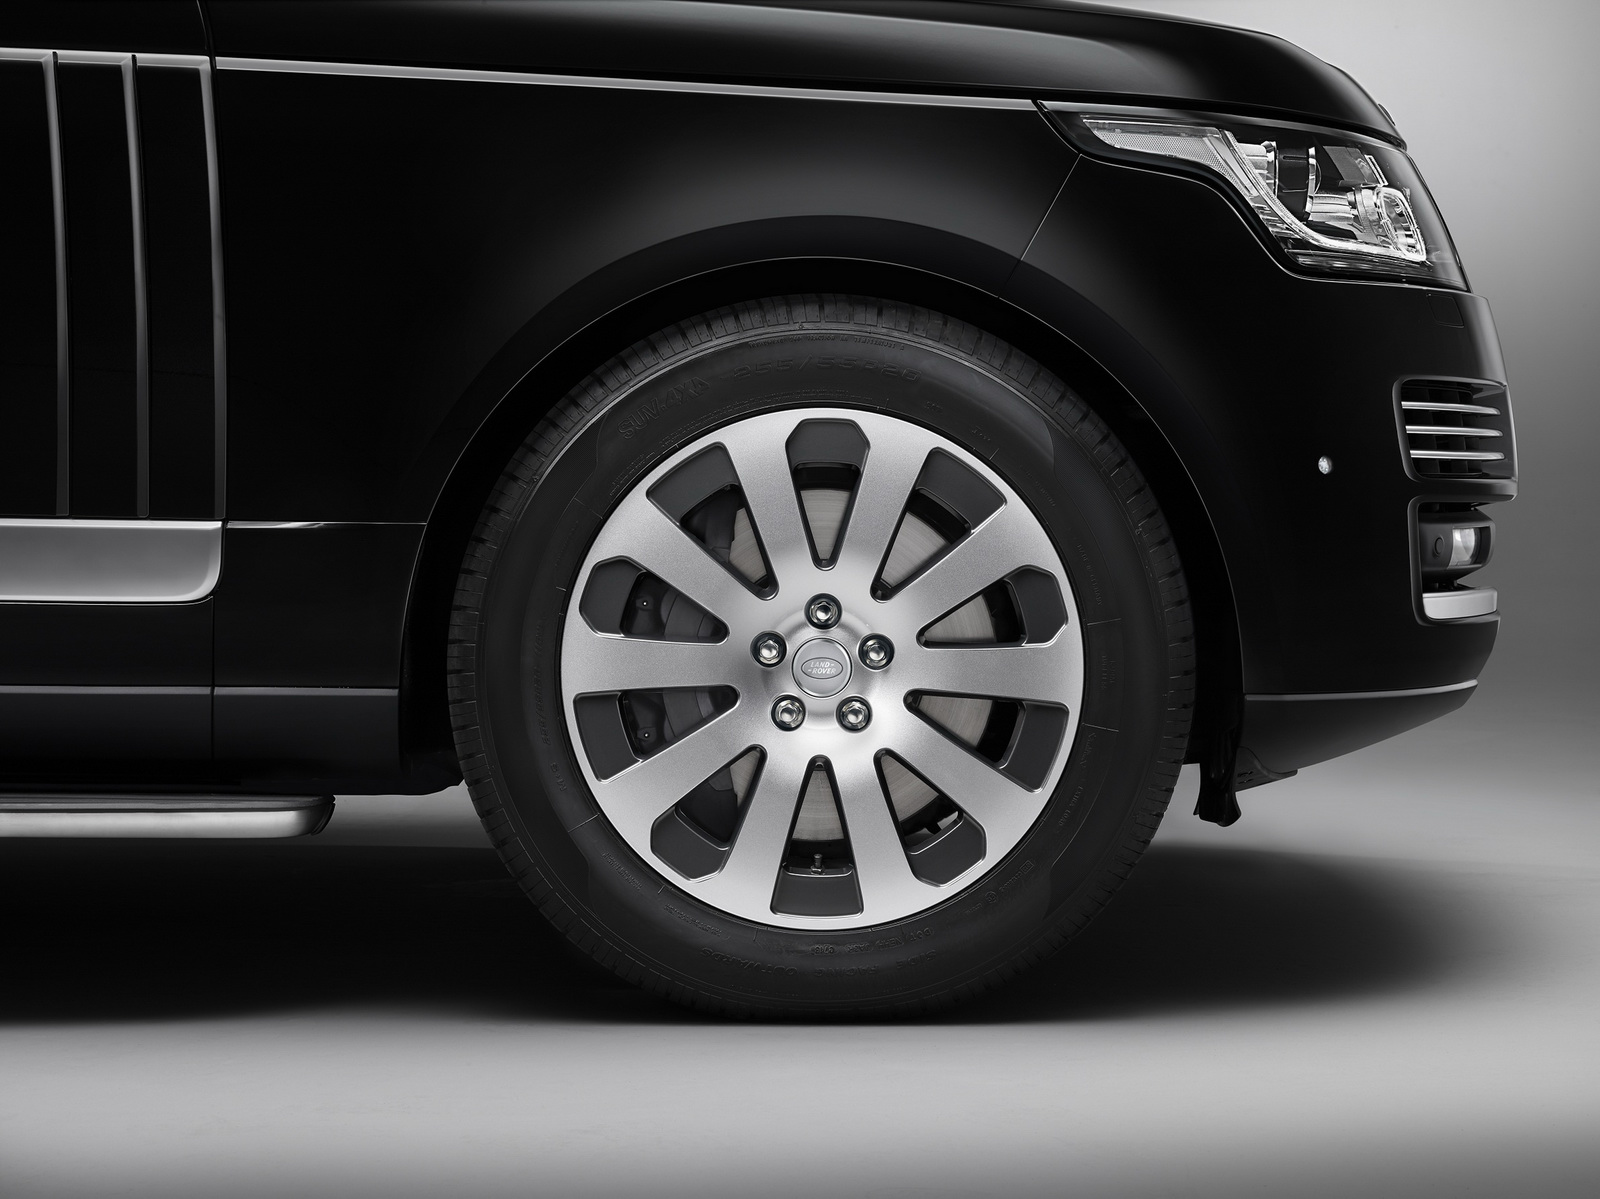 La división SVO de Land Rover lanza su primer vehículo blindado: Range Rover Sentinel